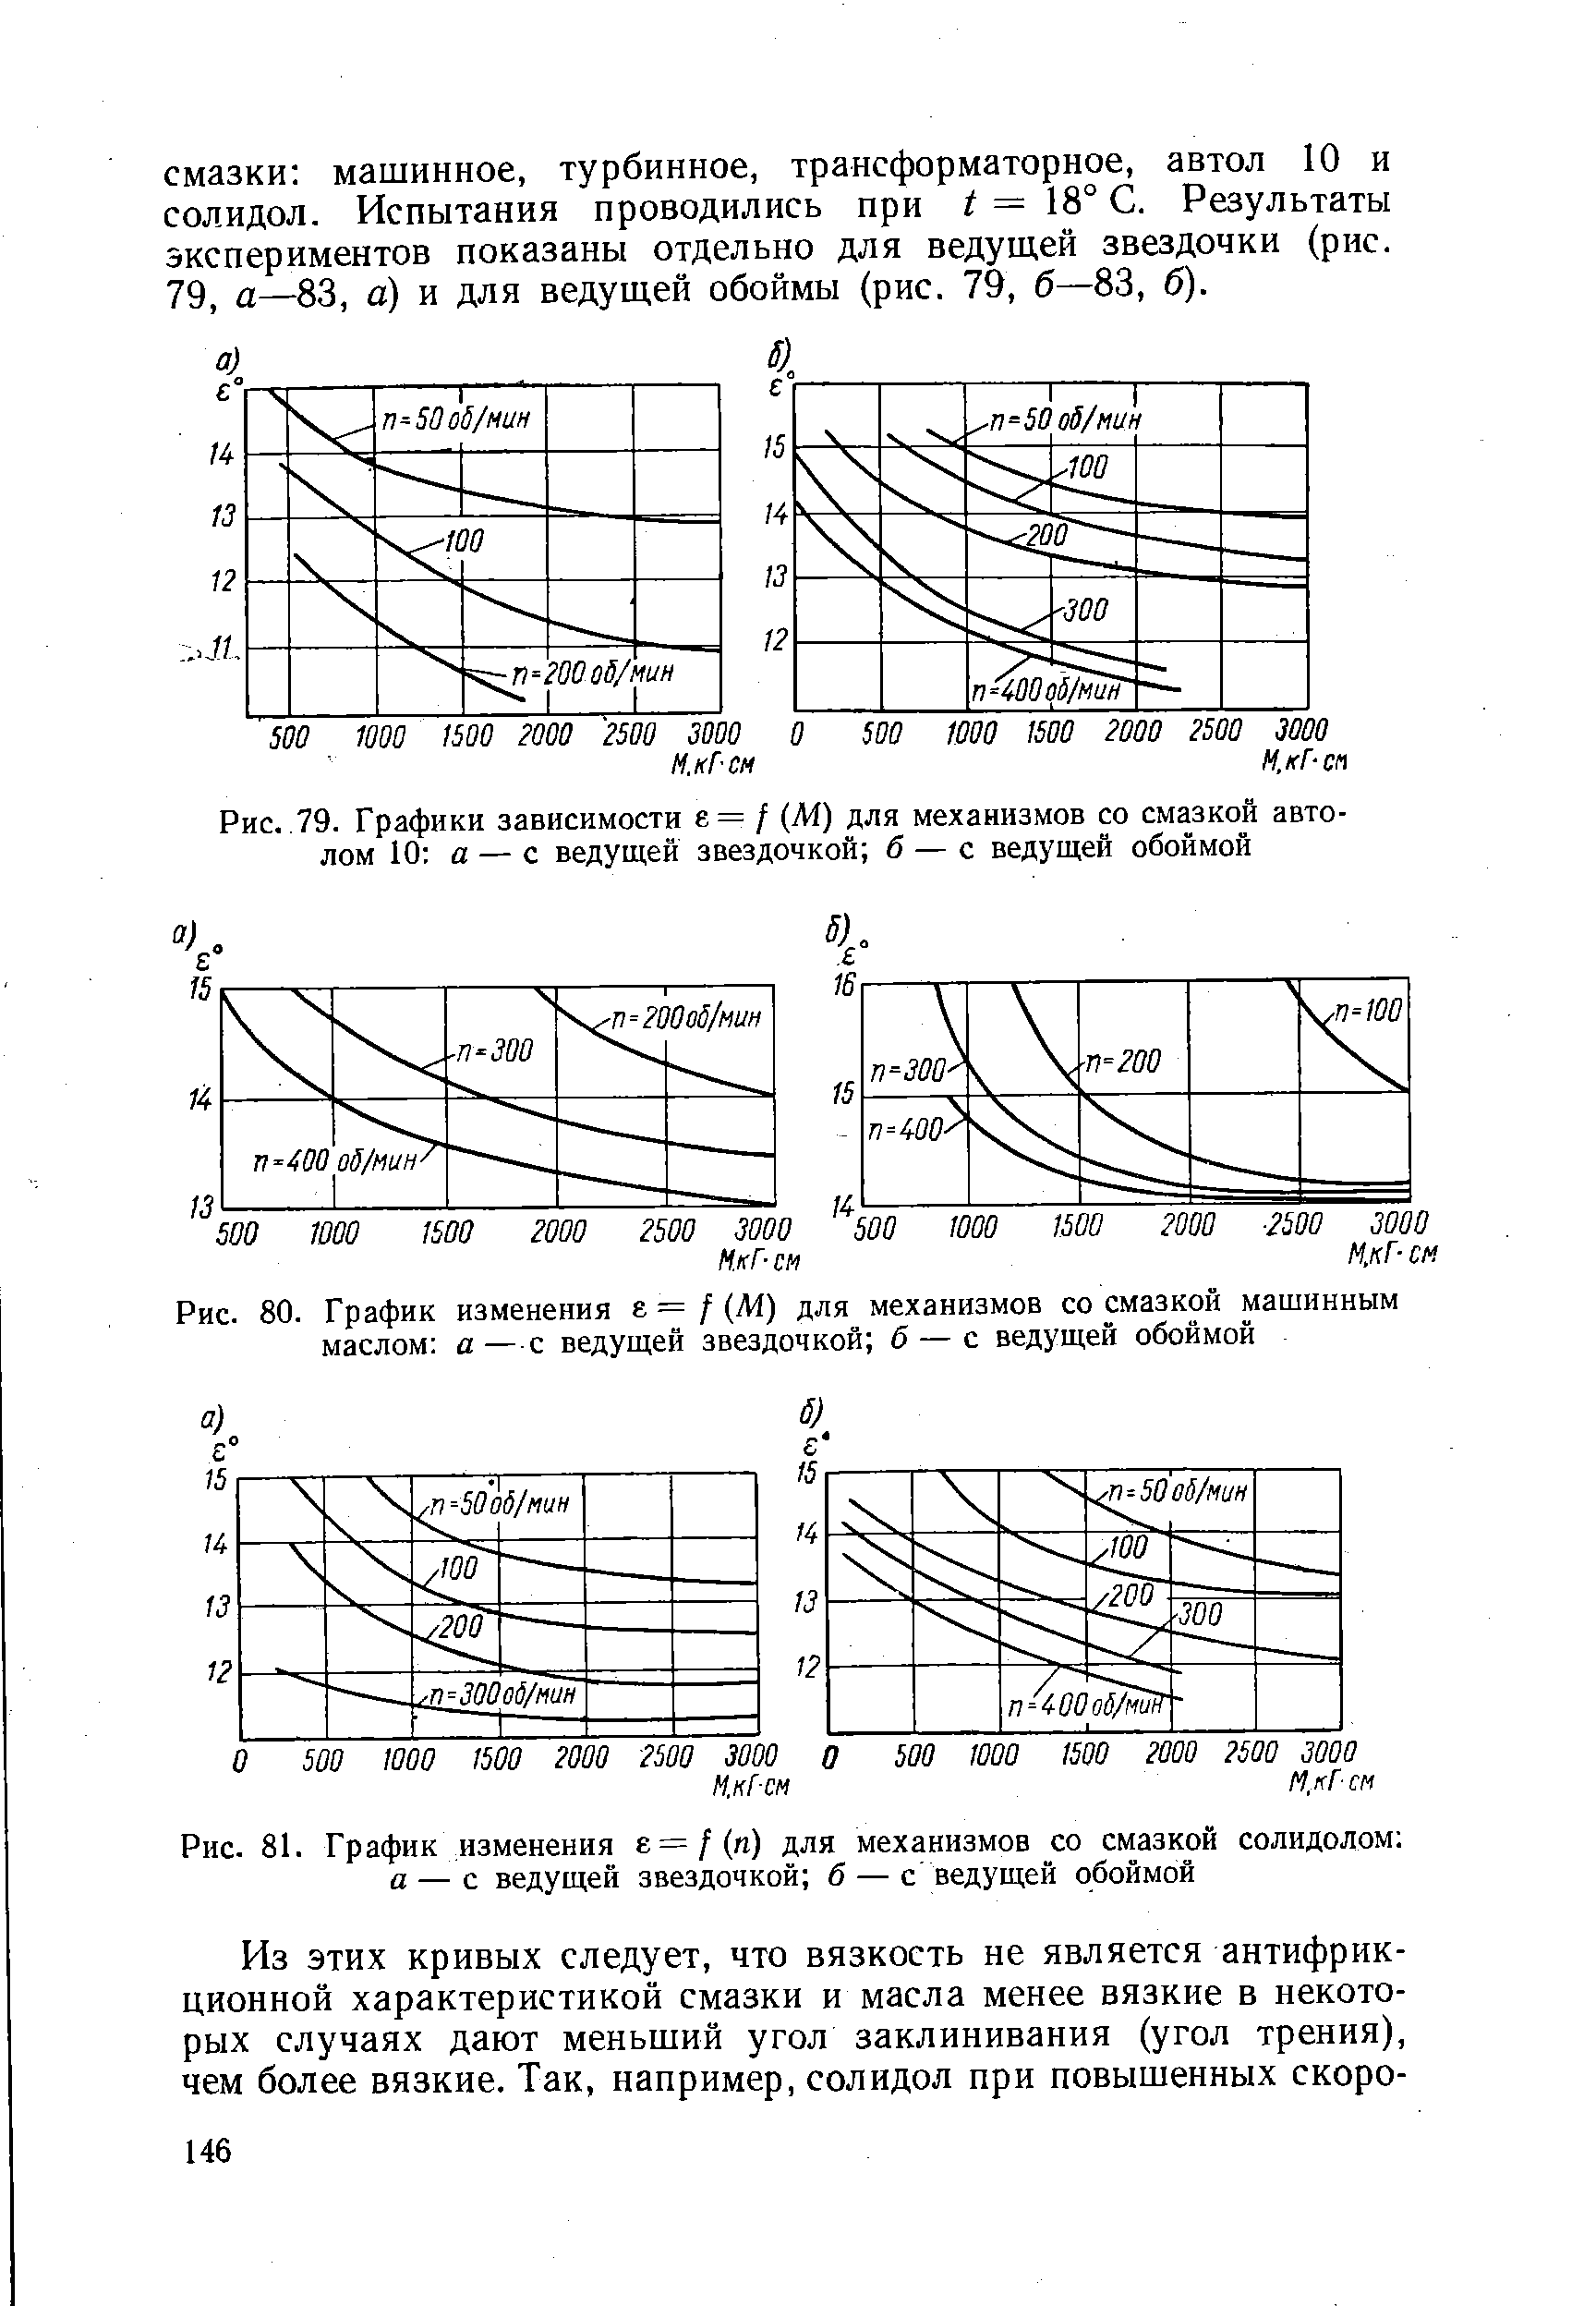 Рис. 80. График изменения e.= f M) для механизмов со смазкой <a href="/info/157252">машинным маслом</a> а—с ведущей звездочкой б — с ведущей обоймой
